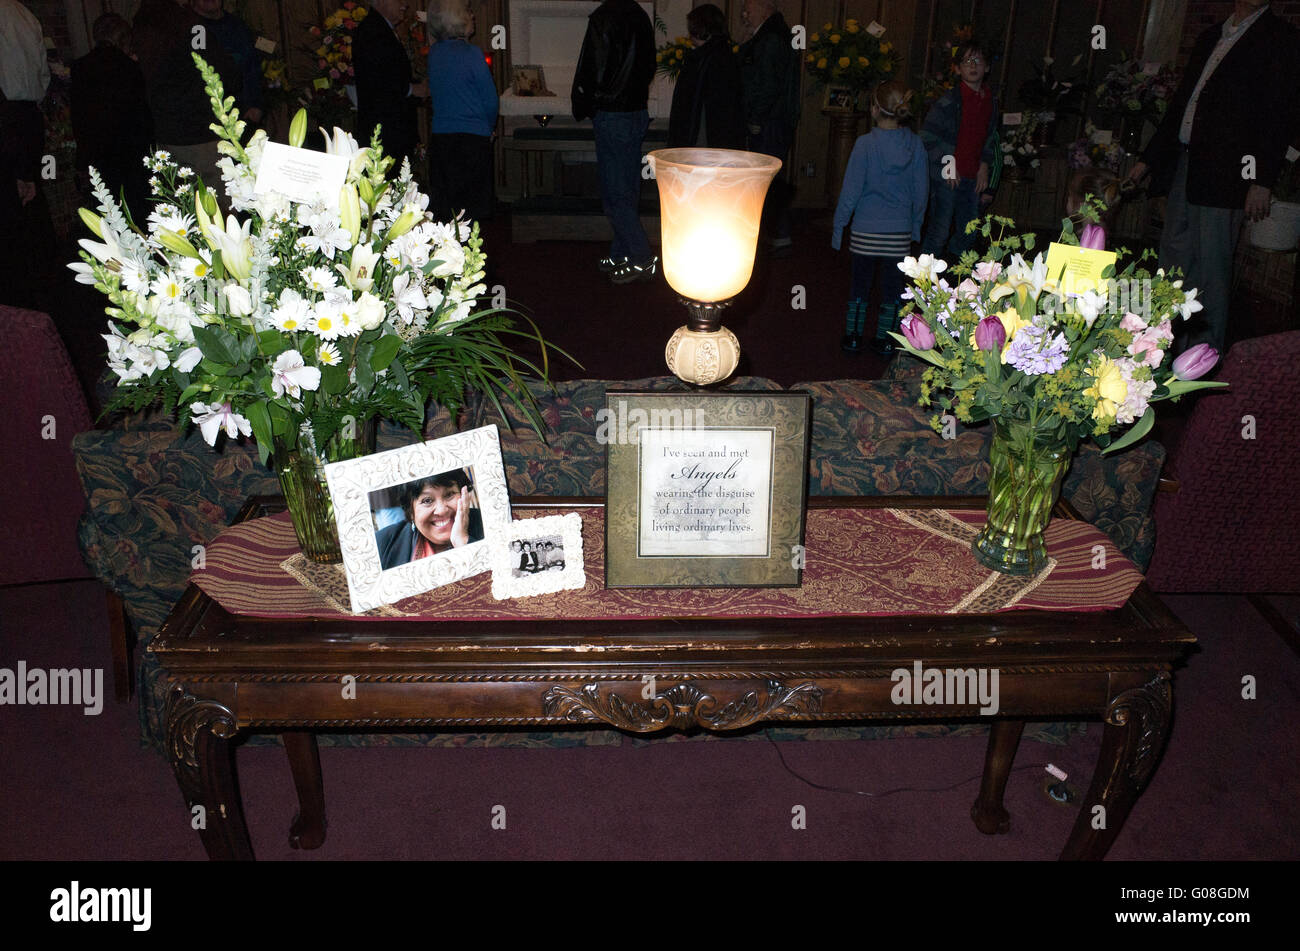 Tabella memoriale al funerale a casa per il defunto americano messicano prossimo, un Democrat che amava la politica. St Paul Minnesota MN USA Foto Stock